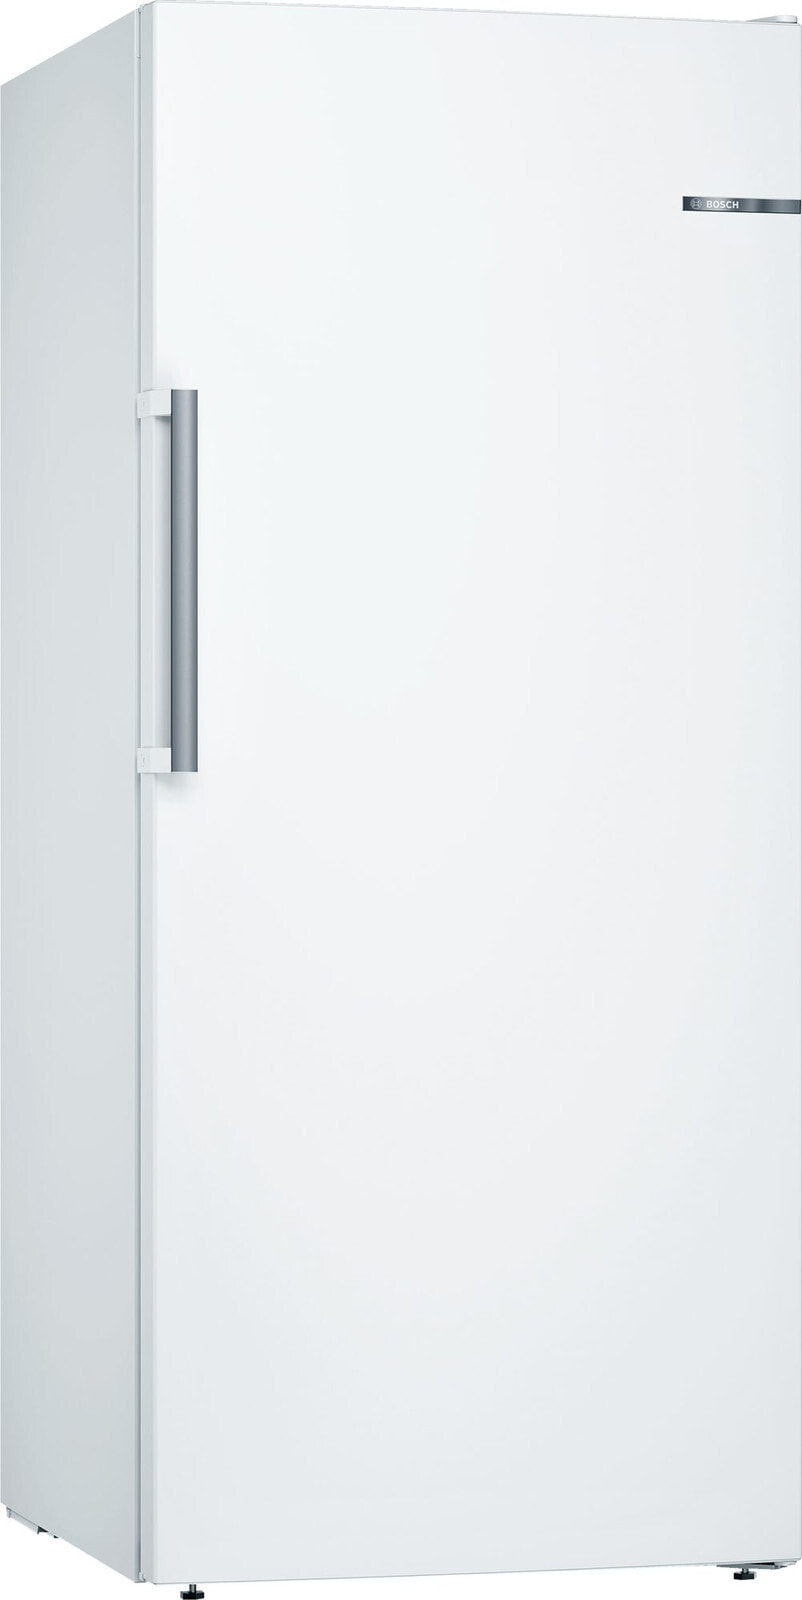 Bosch Serie 6 GSN51AWDV морозильный аппарат Отдельно стоящий Вертикальный Белый 289 L A+++